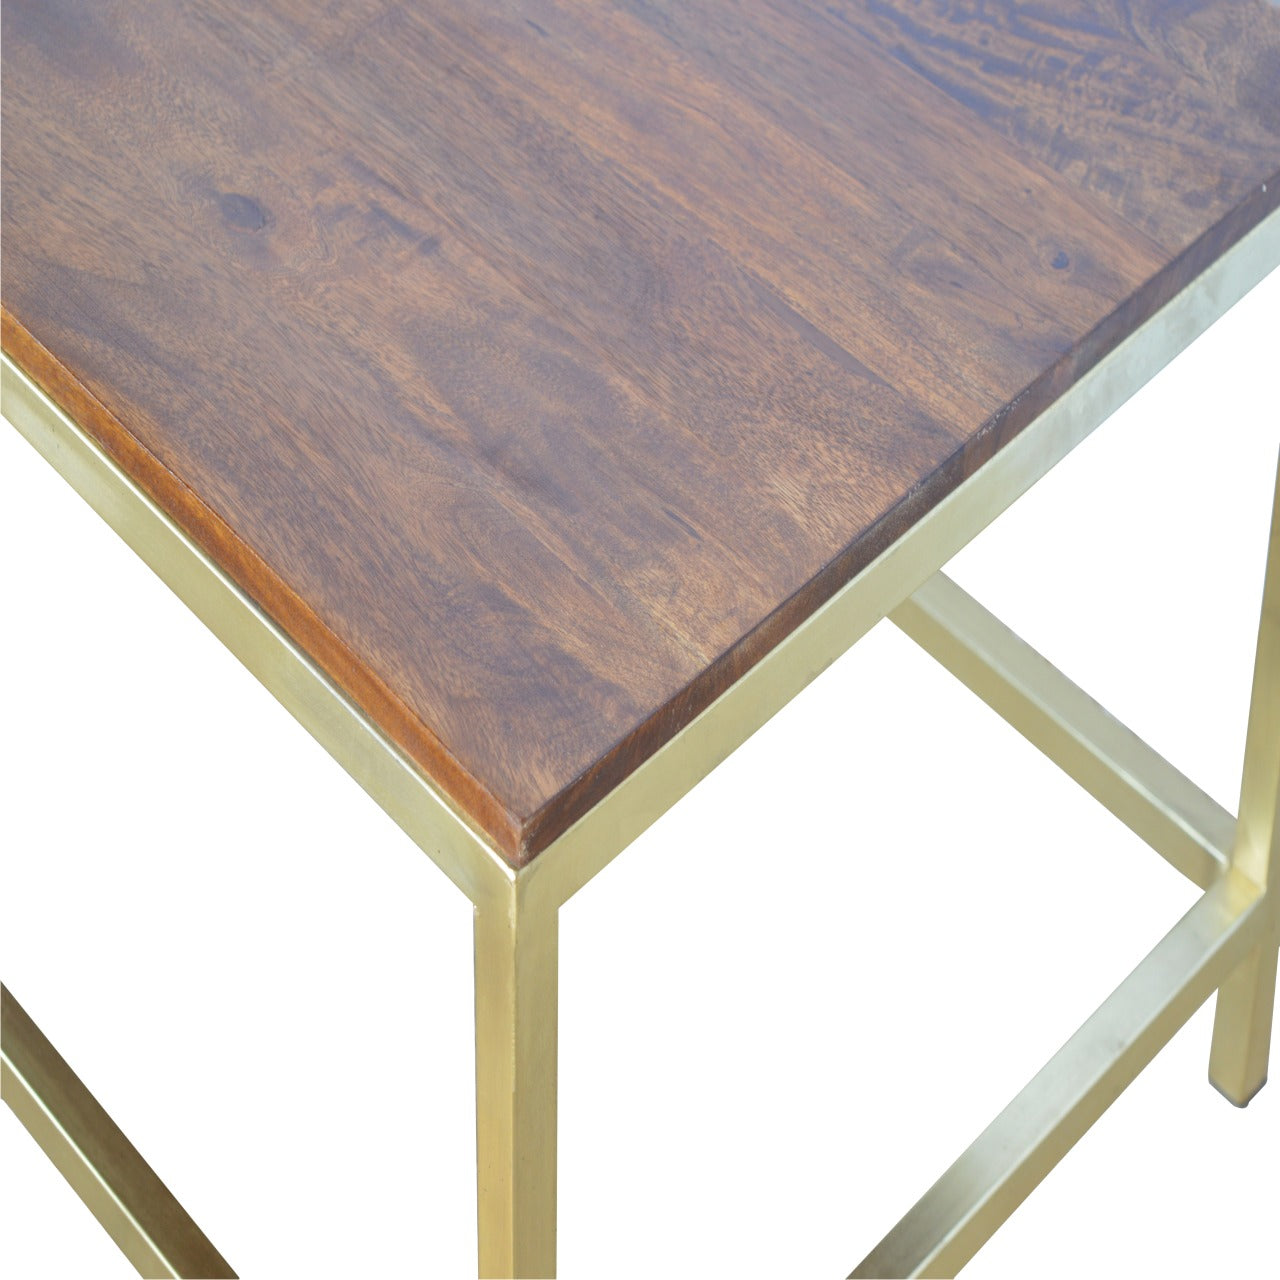 Table basse rectangulaire avec base dorée